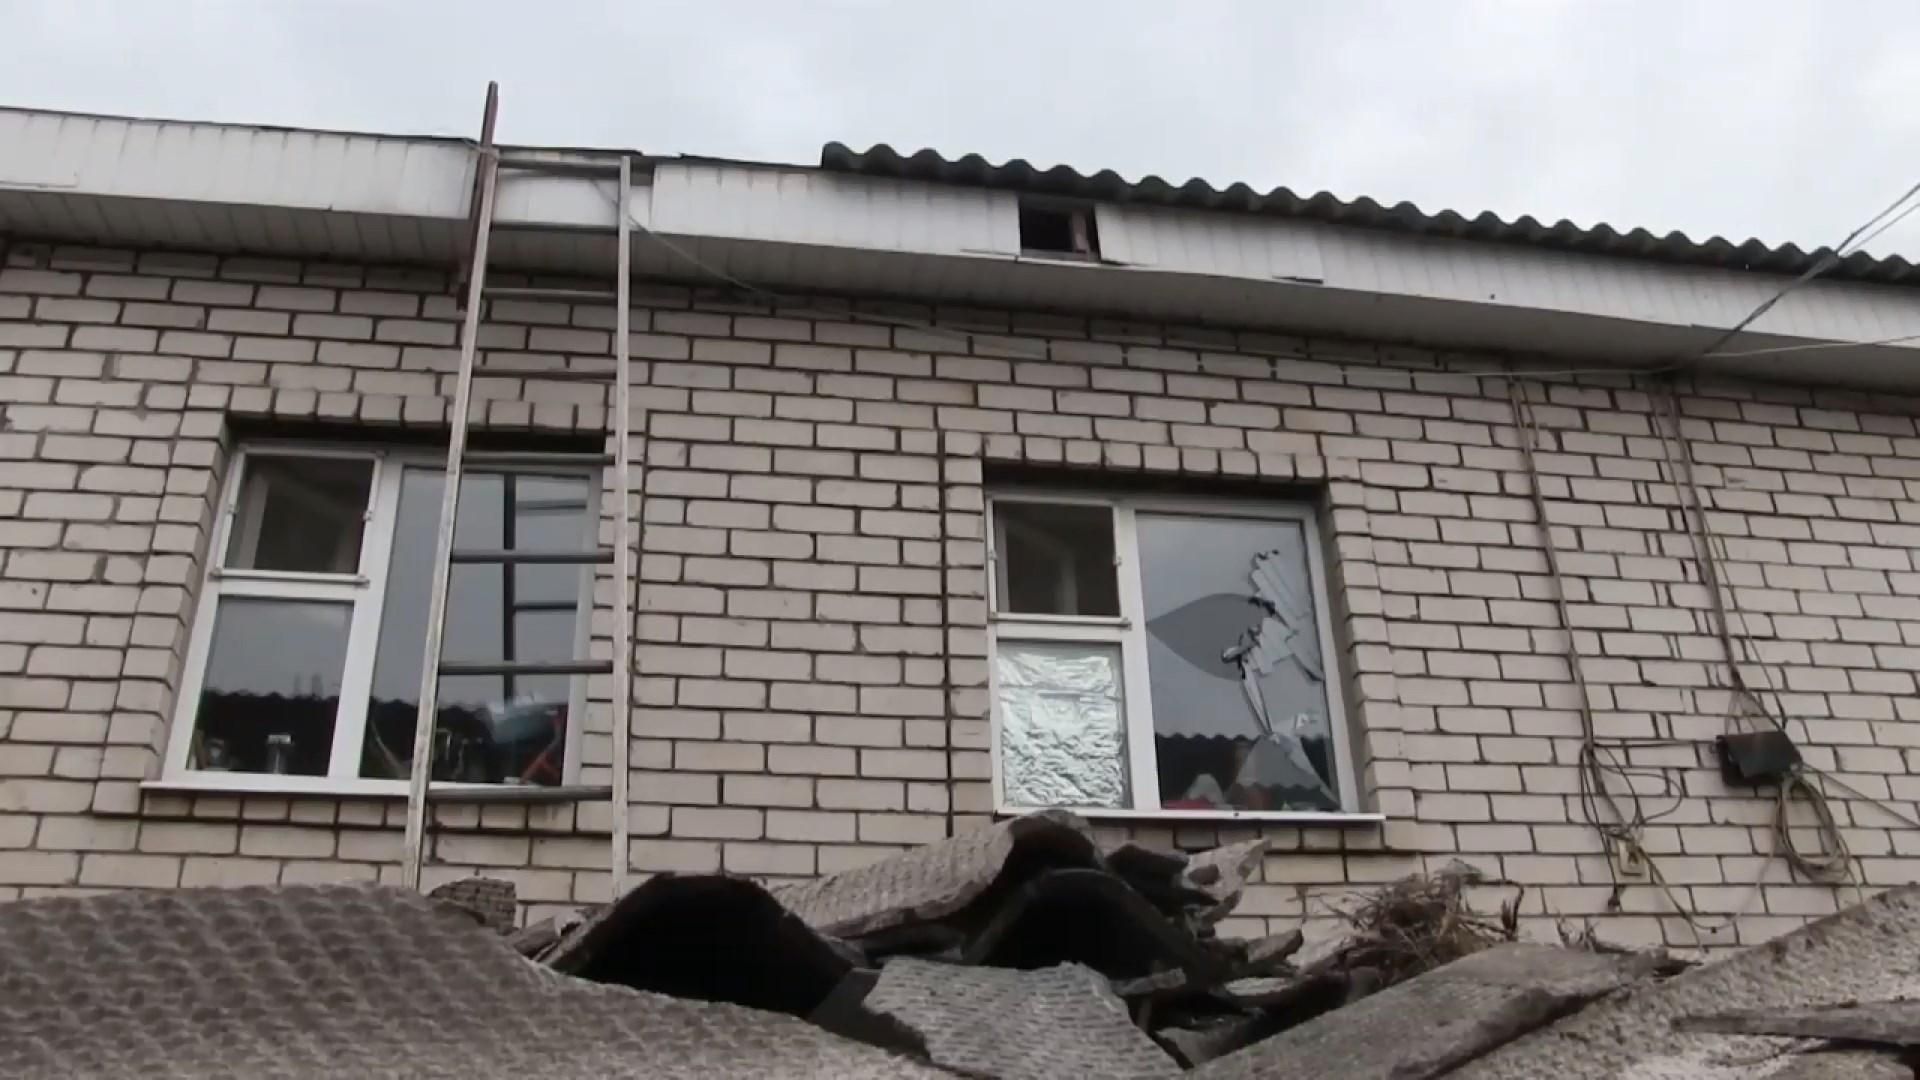 Мало не вбили у день народження: окупанти розтрощили будинок місцевої мешканки на Луганщині